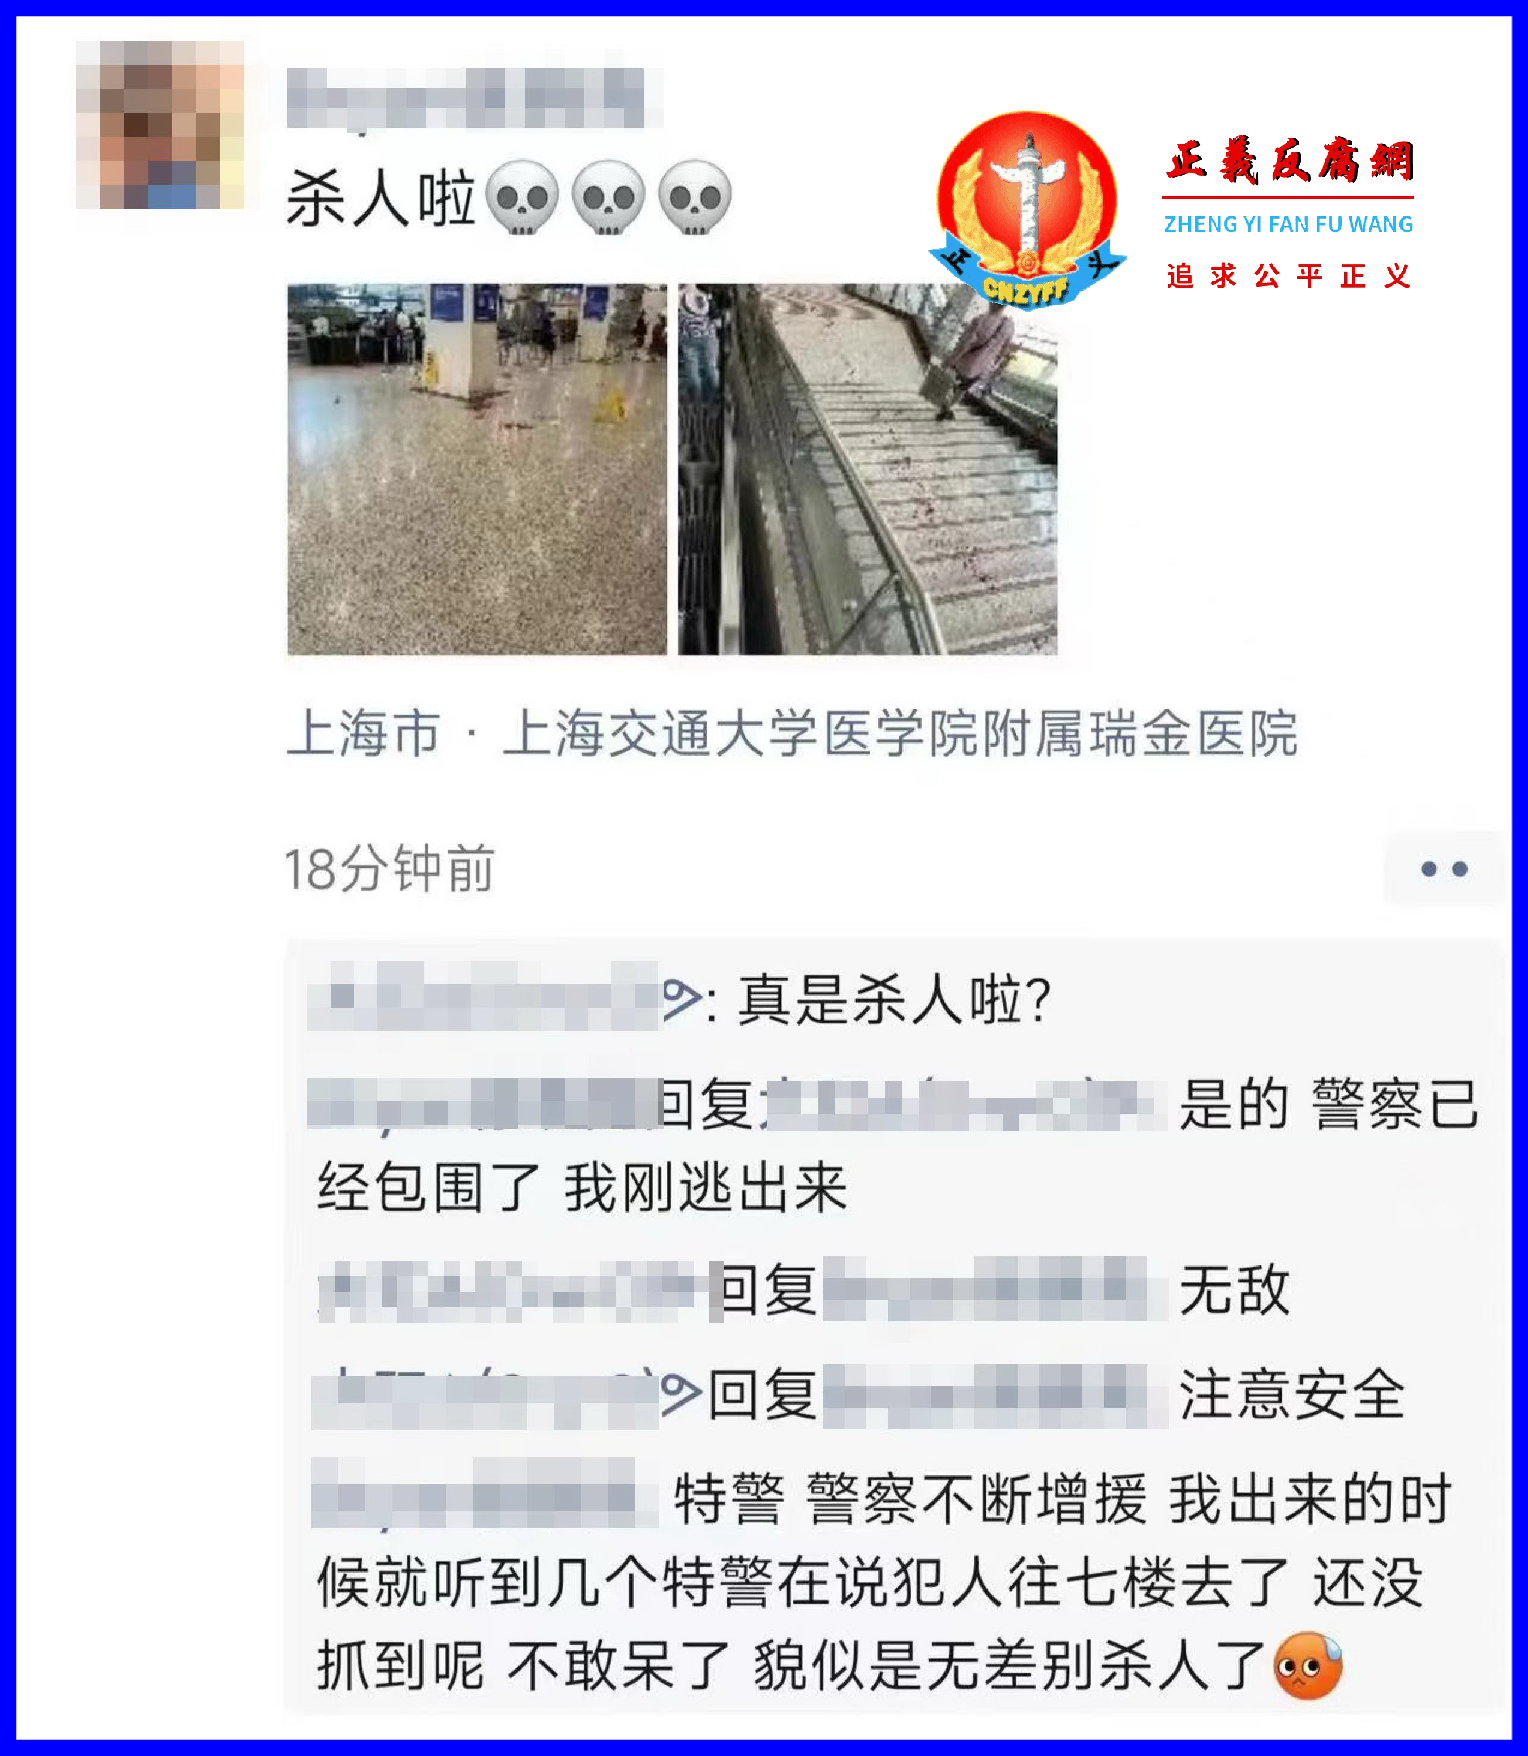 上海交通大学医学院附属瑞金医院内发生持刀砍人事件.png